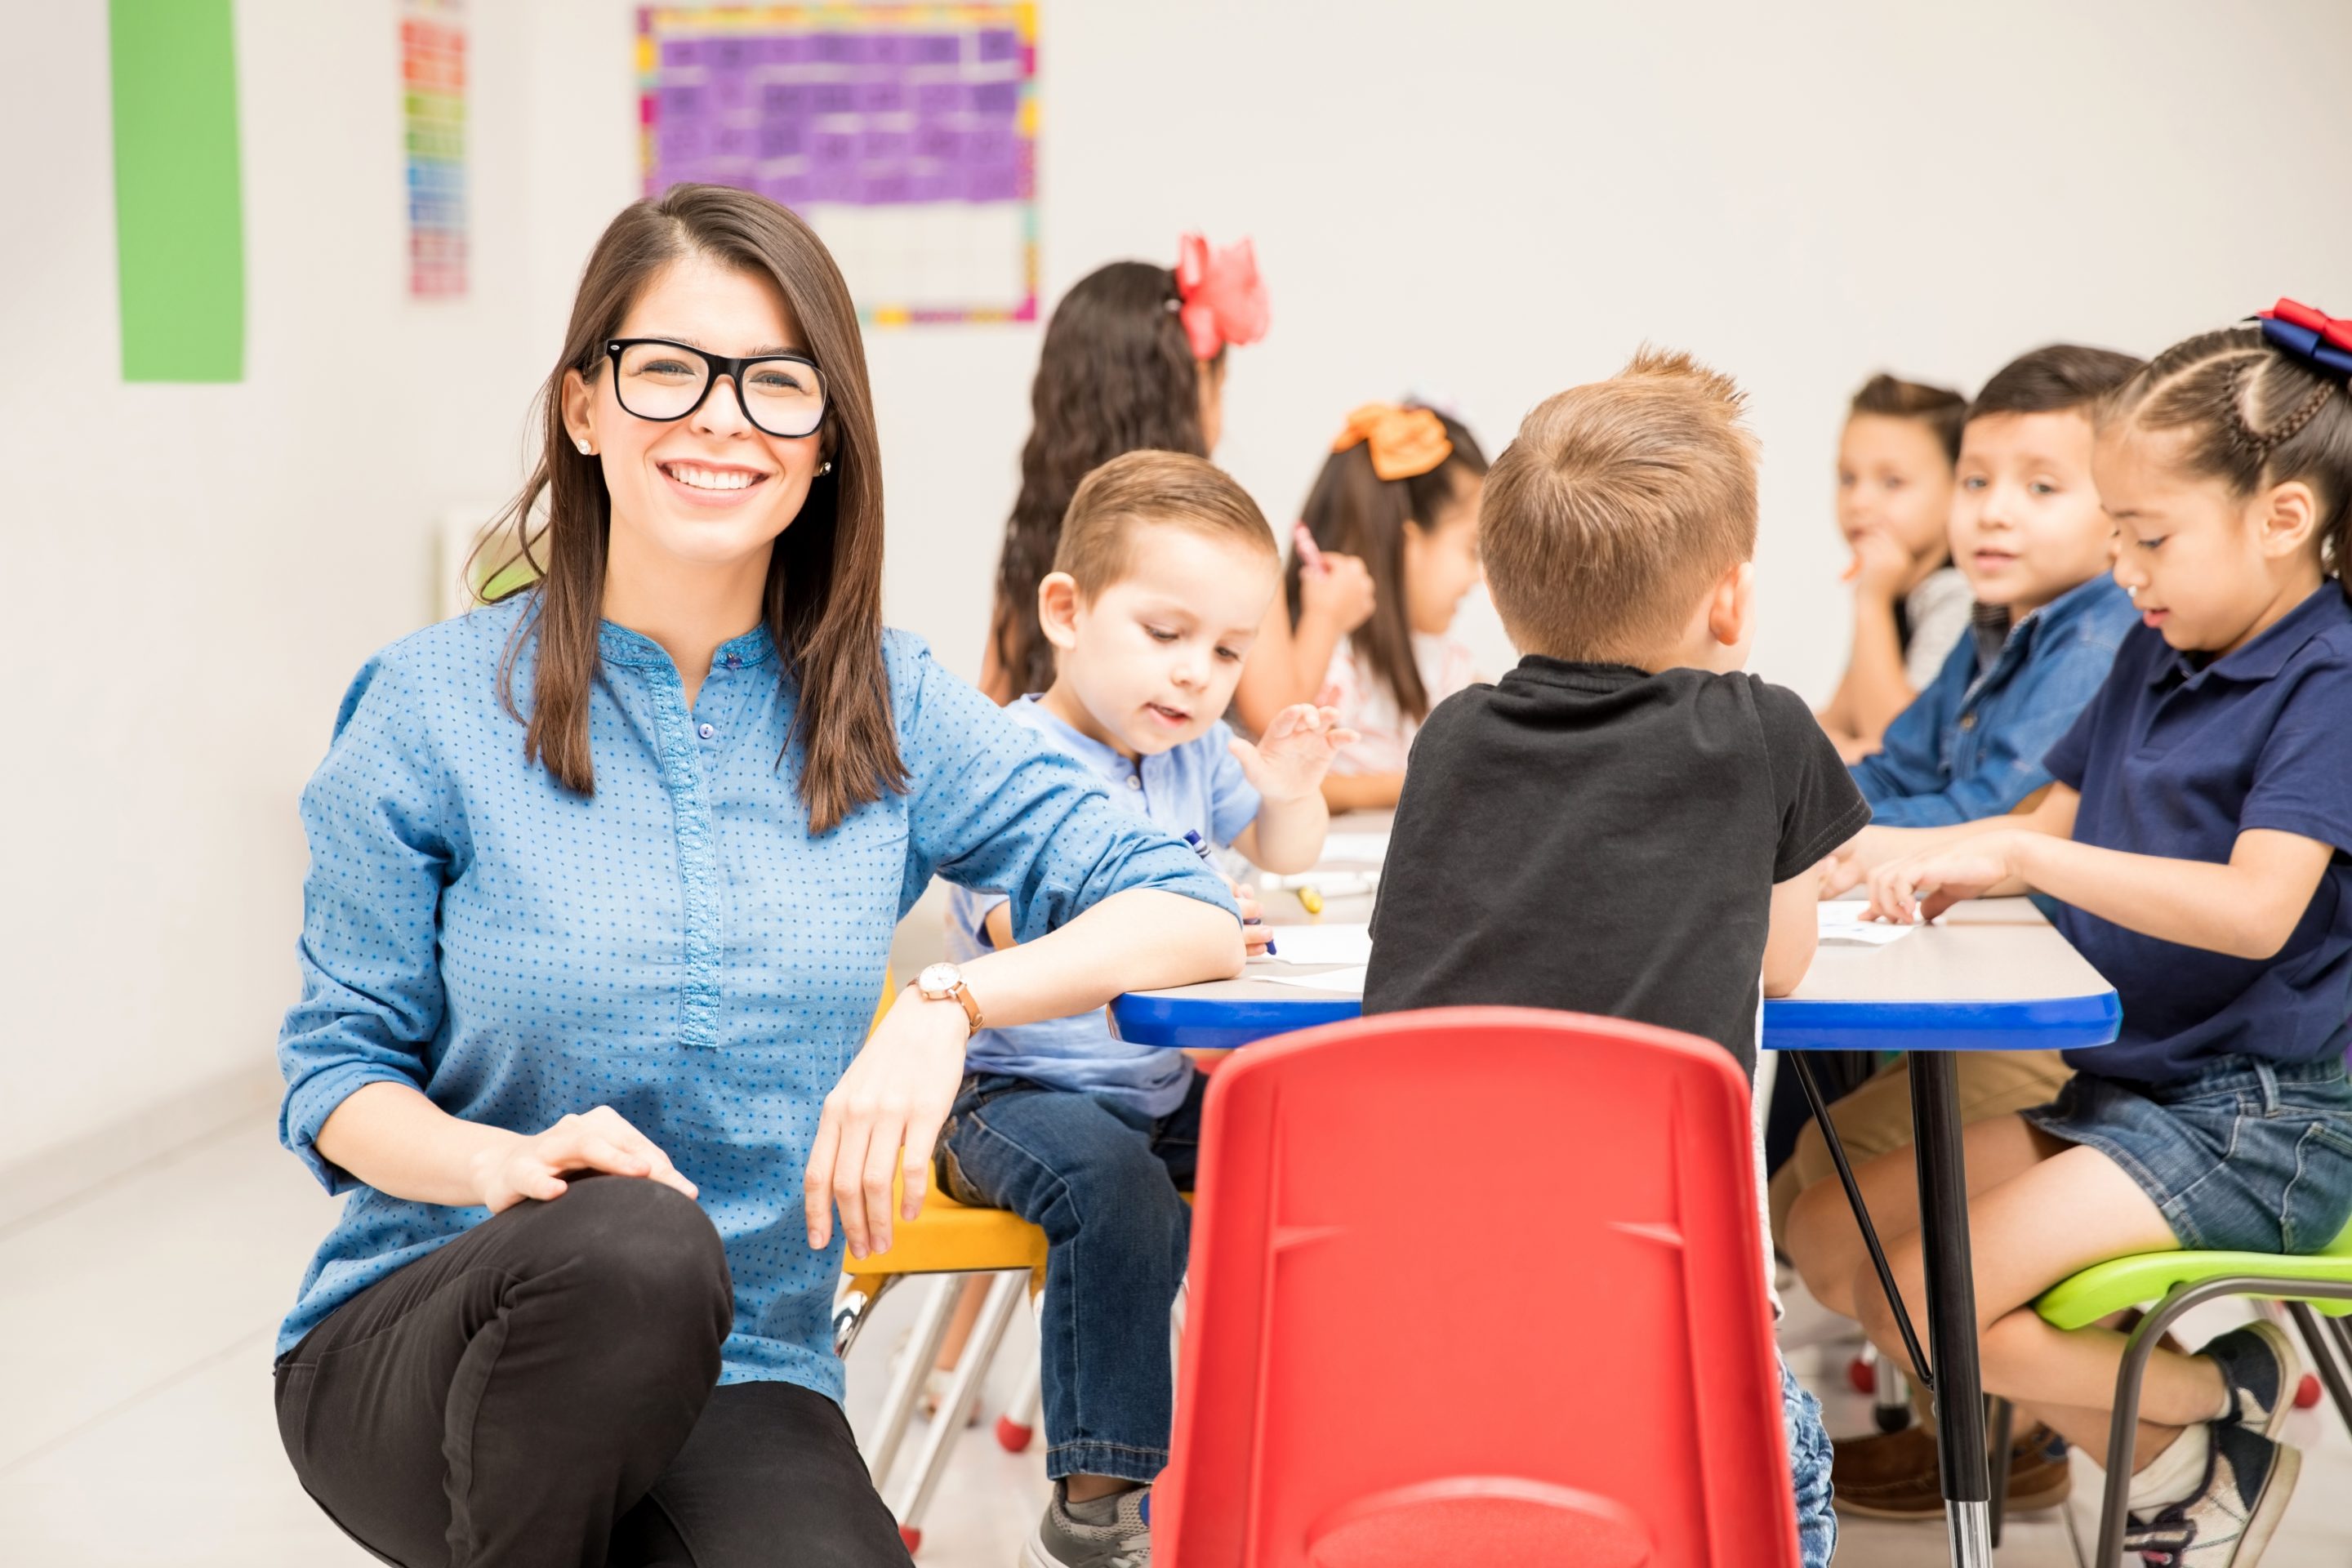 Prevención de riesgos en centros educativos: en la imagen vemos una mujer, profesora de infantil, agachada con el brazo apoyado en una mesa de clase. Lleva gafas y está mirando hacia la cámara y sonriendo. En la mesa hay niños sentados dibujando.